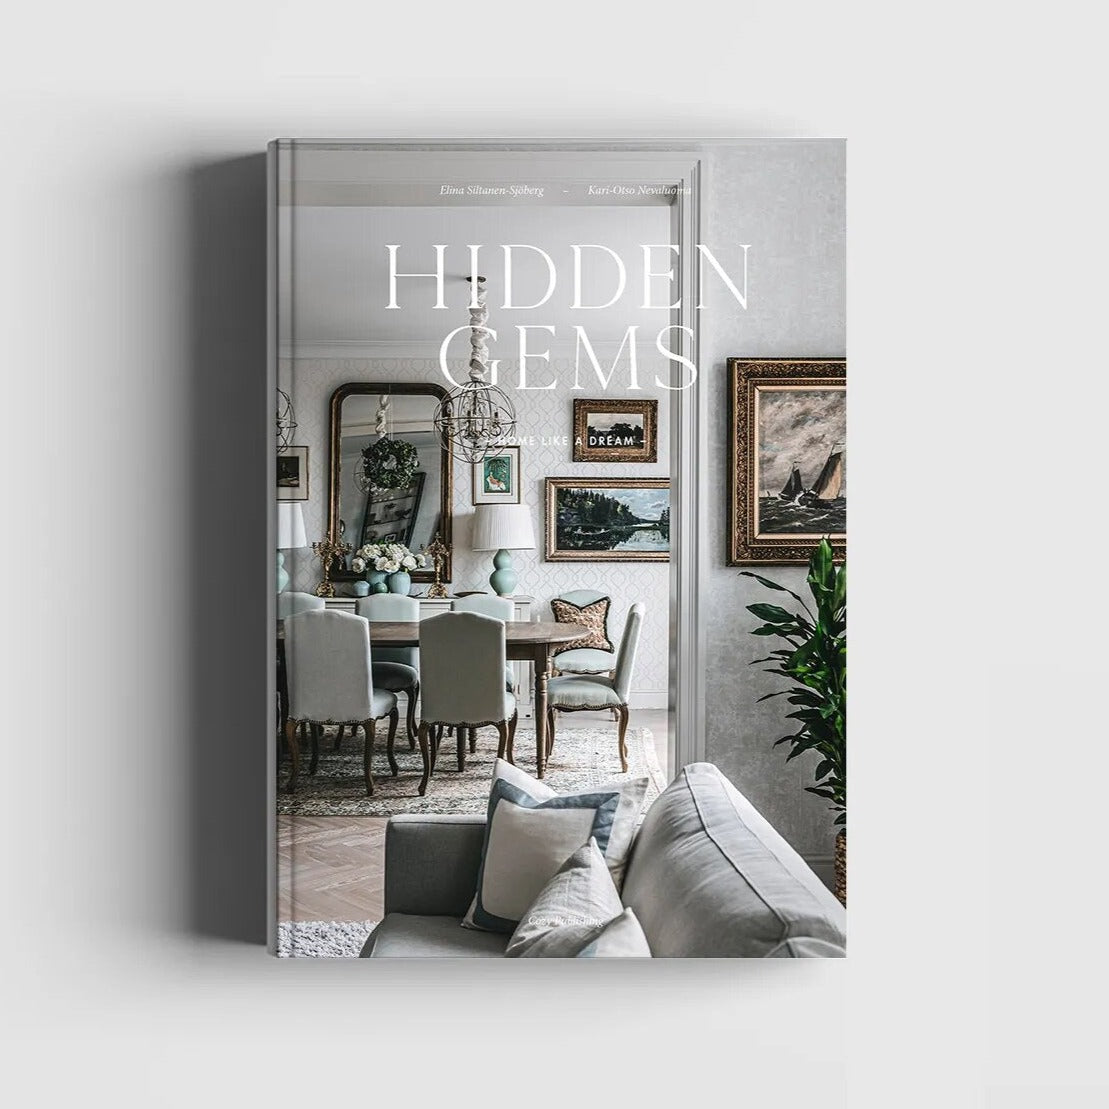 Hidden Gems - Home like a dream